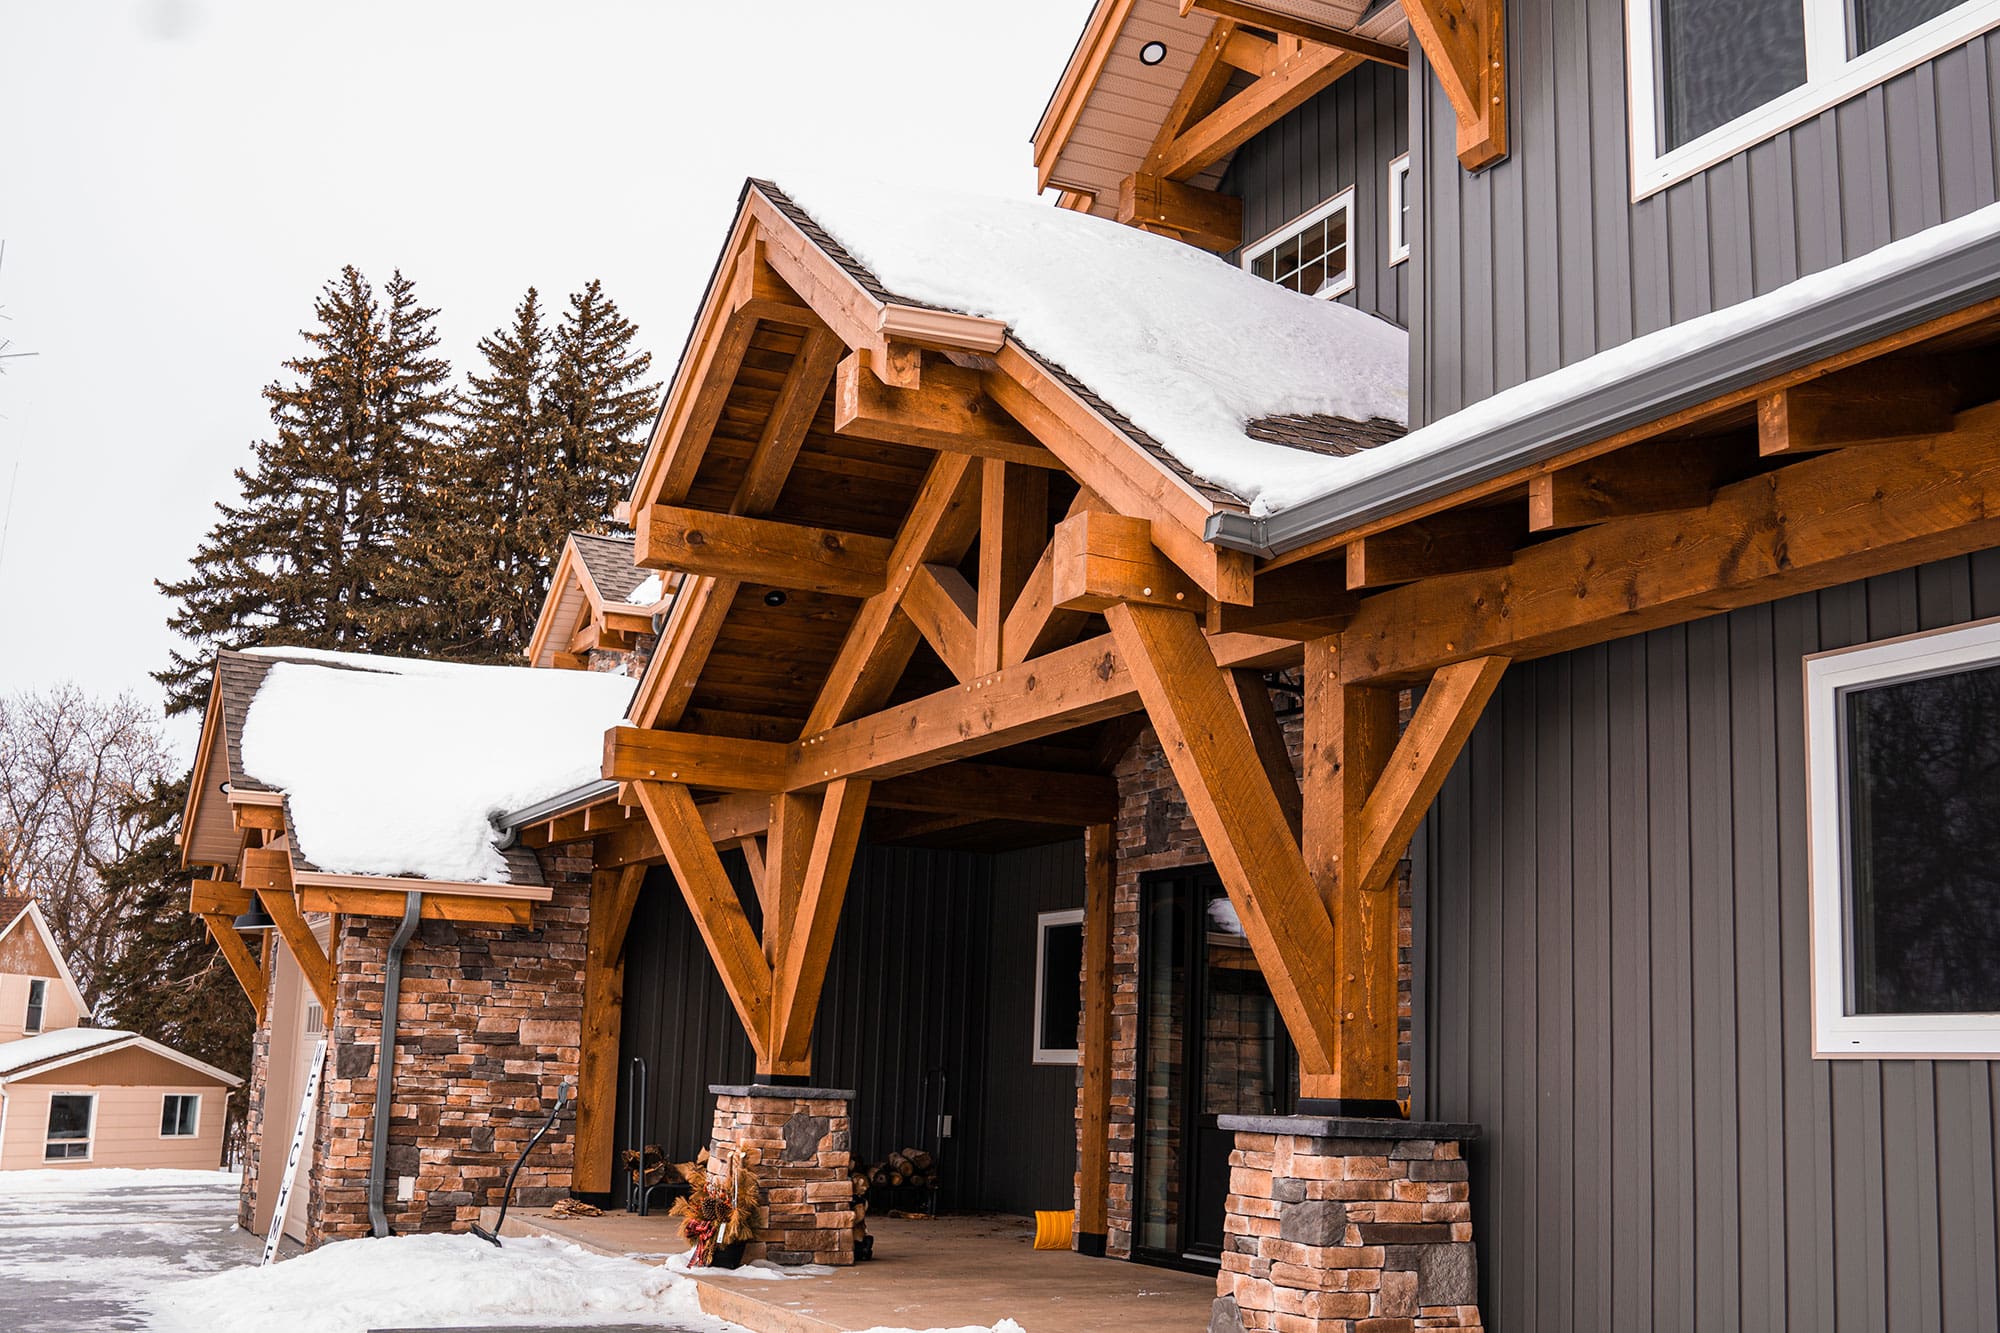 Timber frame designed home